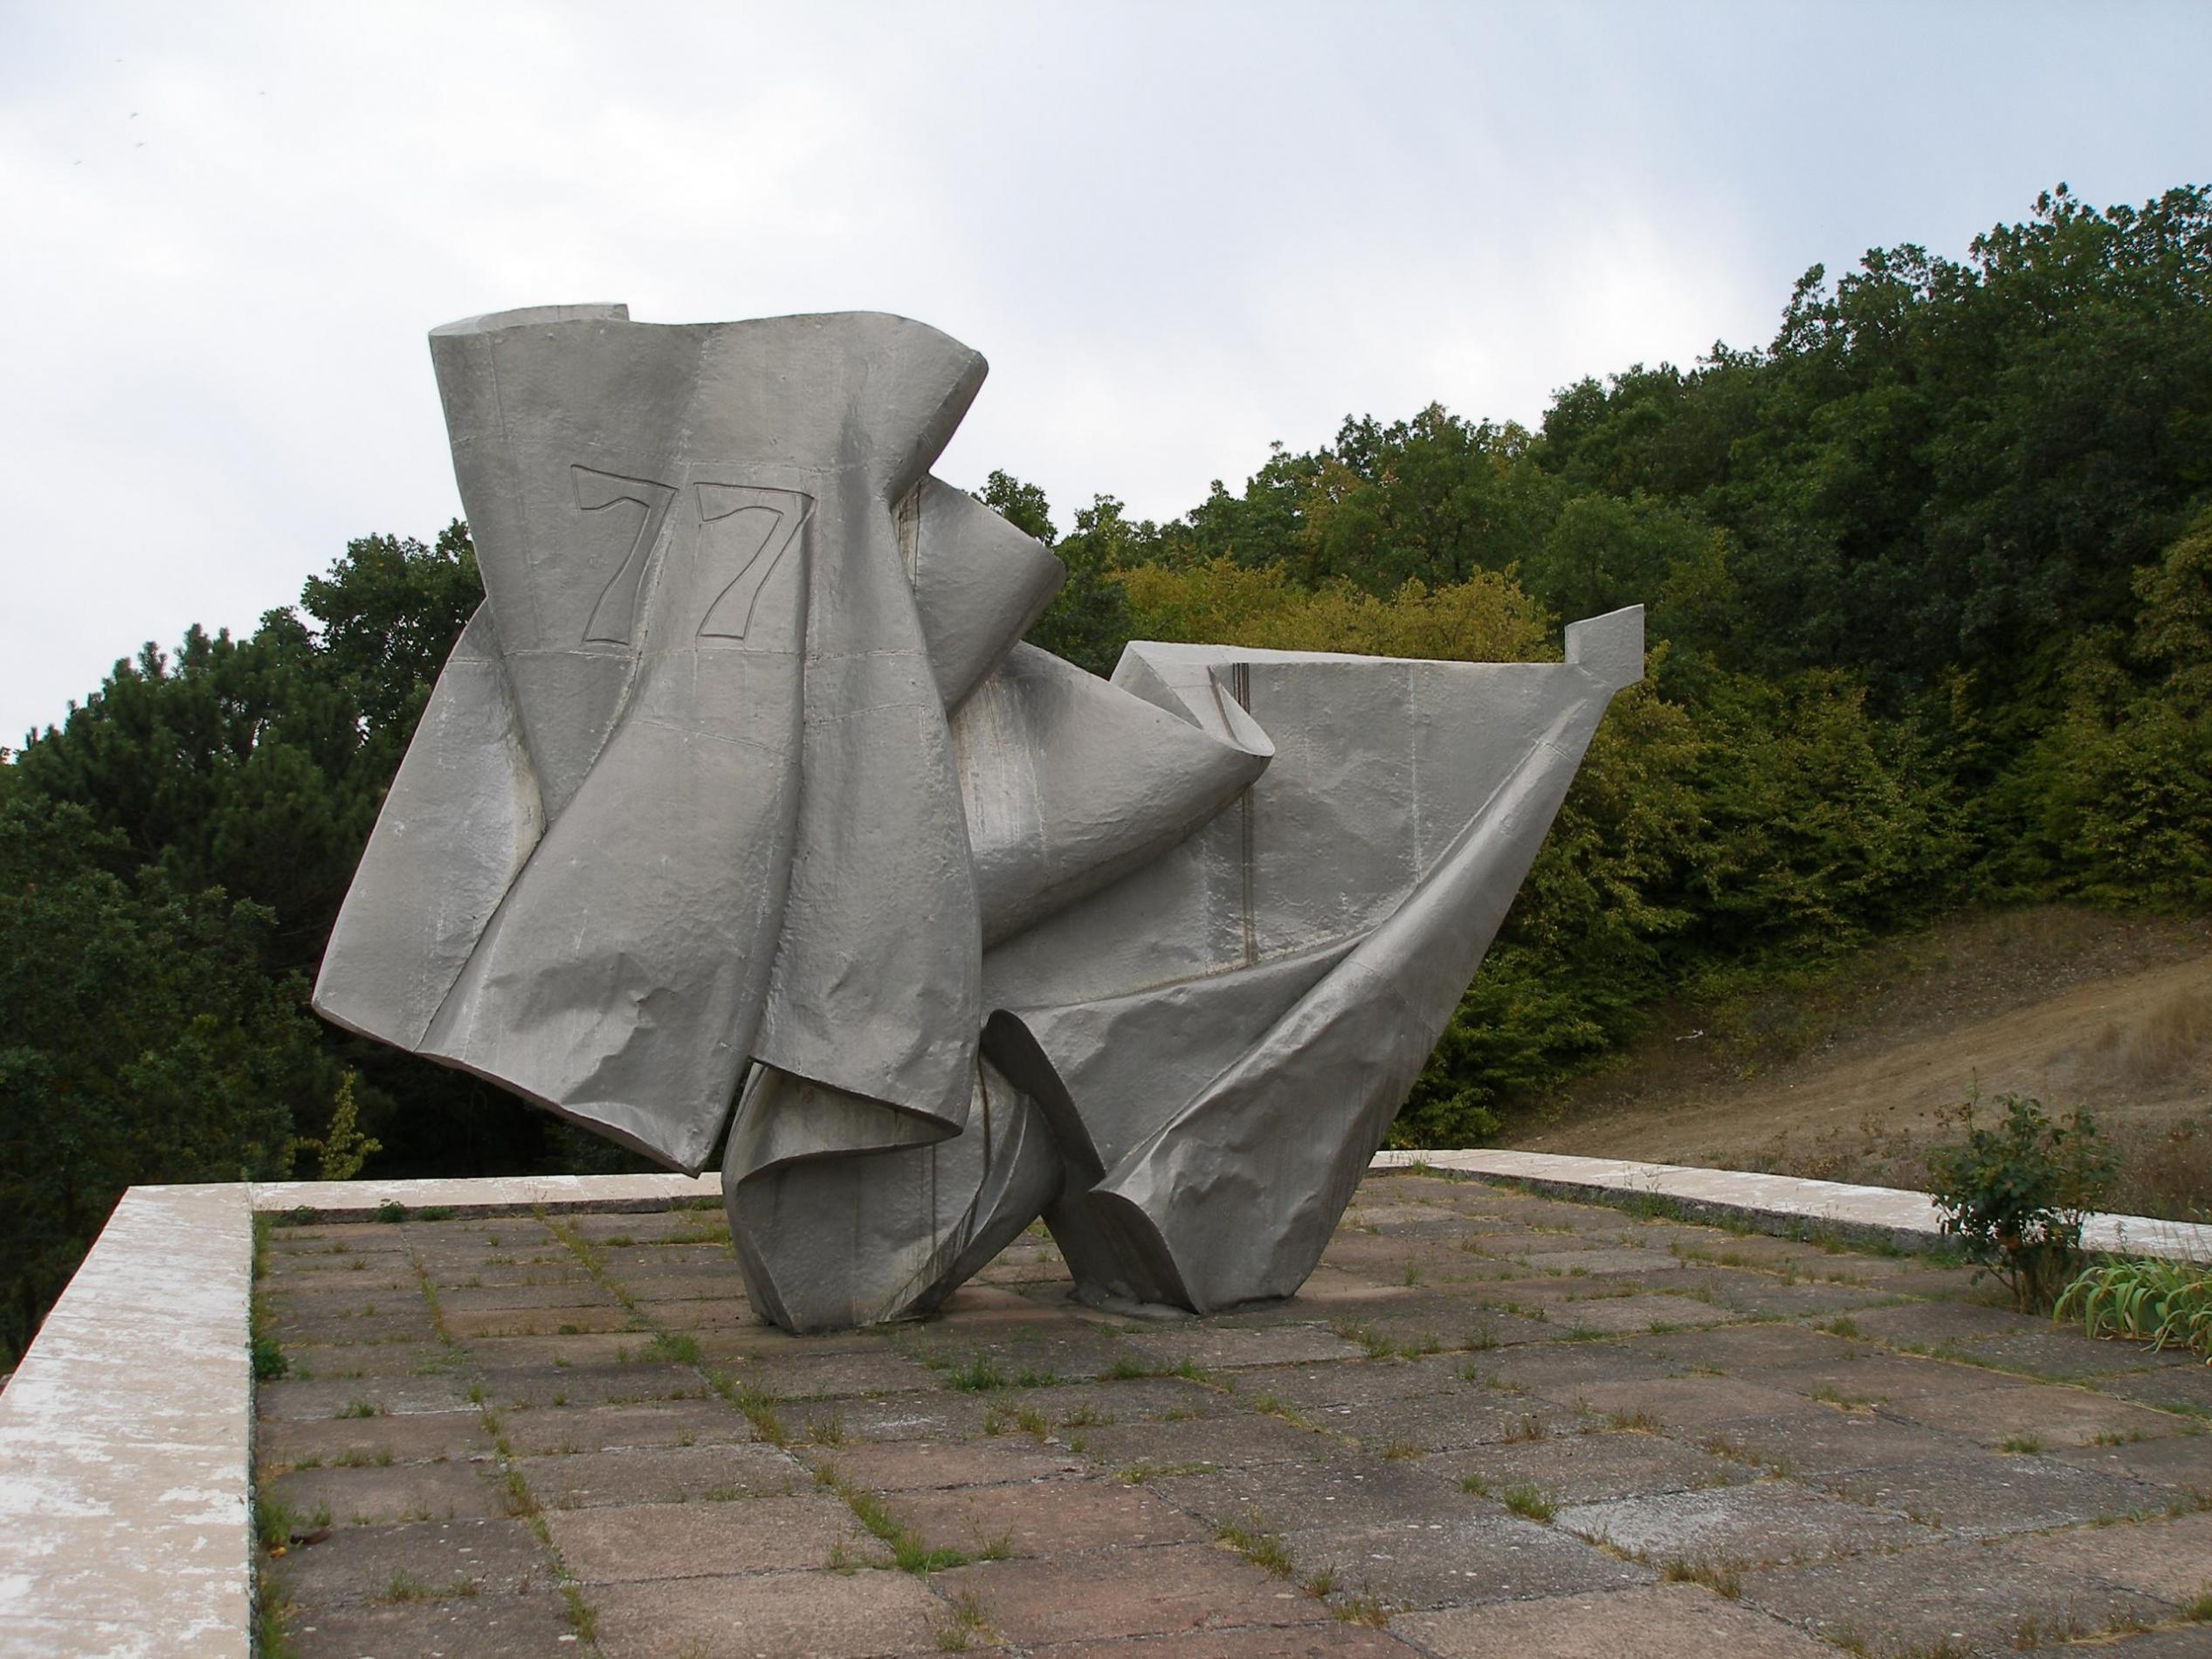 Памятник Воинам 77 Стрелковой Дивизии